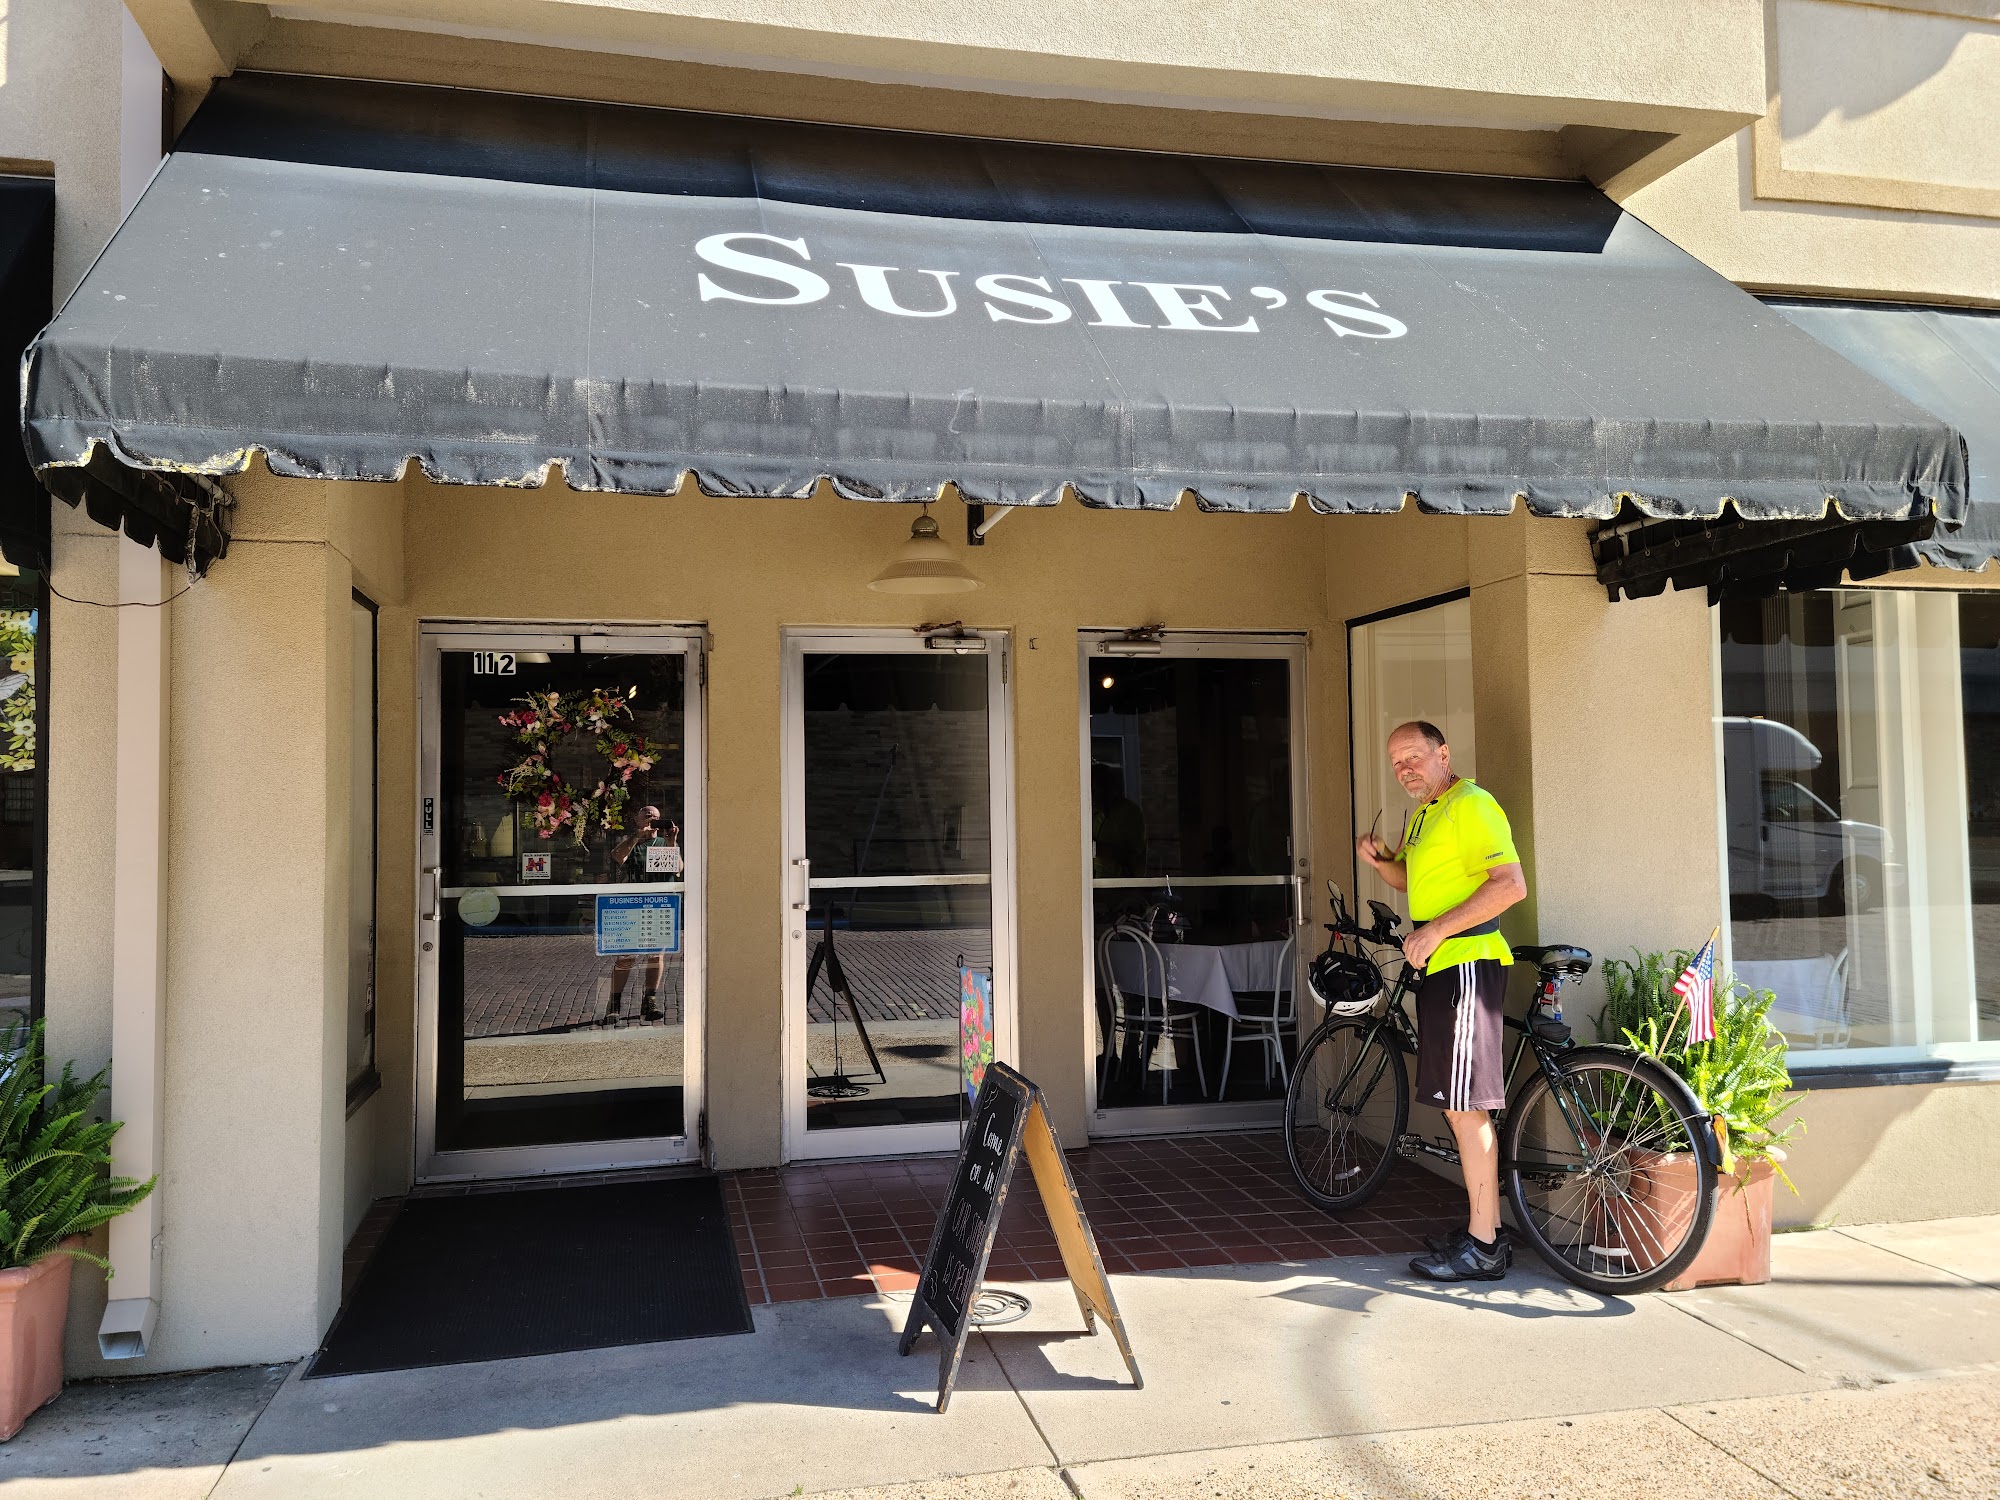 Susie's Bake Shop & Restaurant